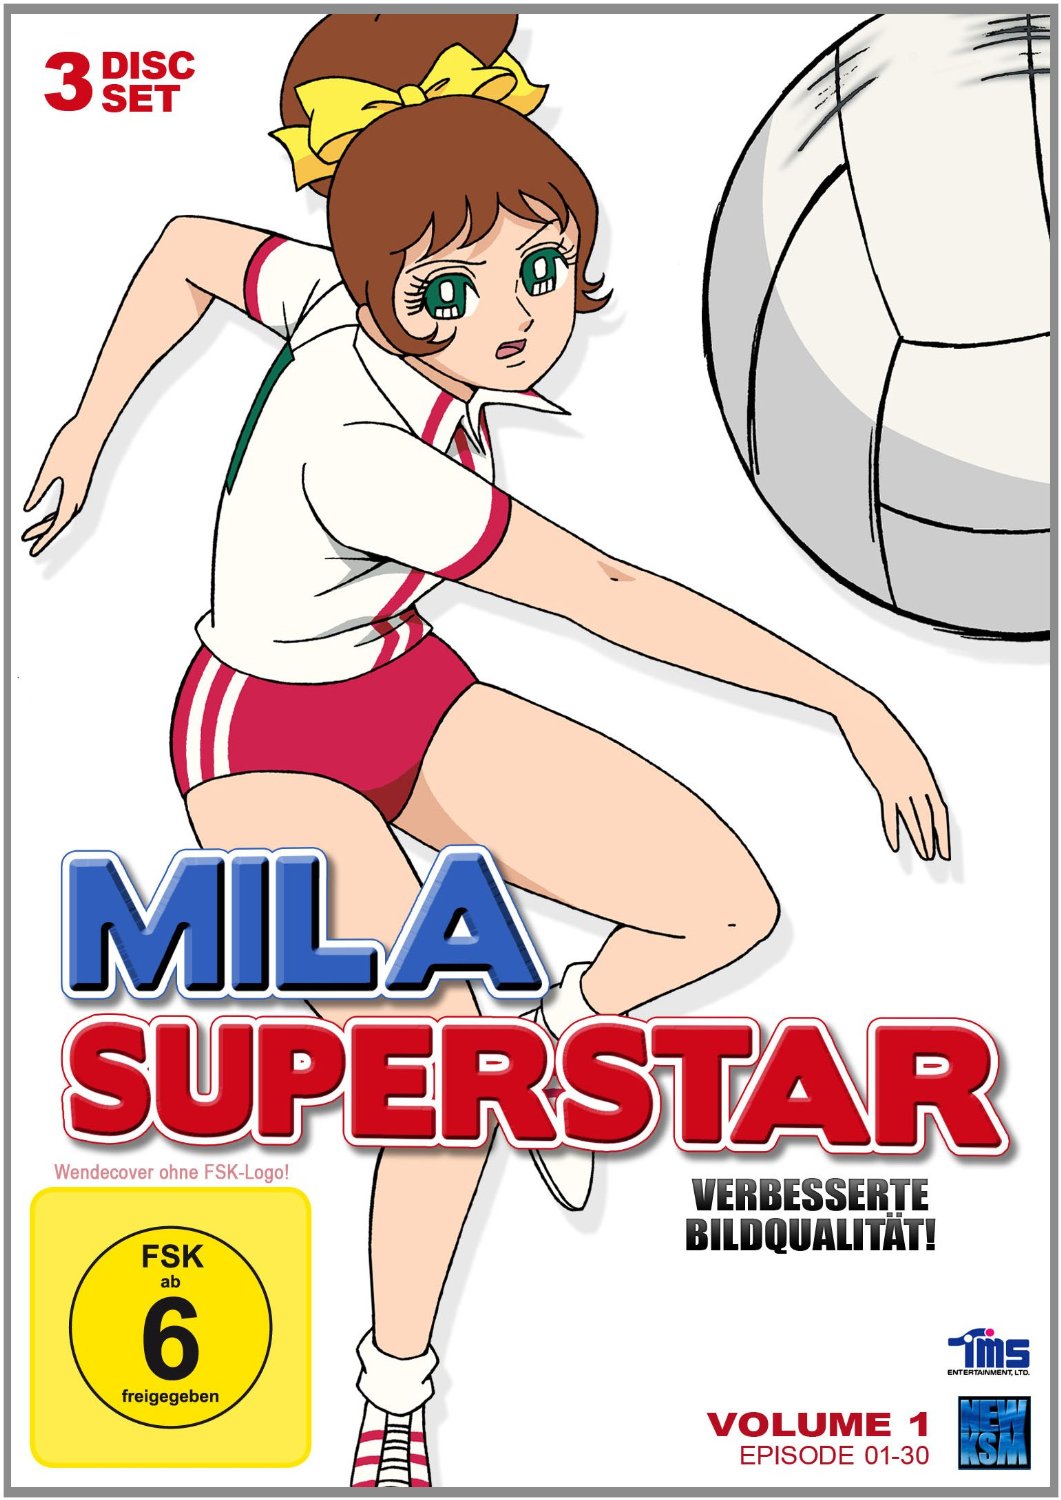 Mila Superstar - Volume 1: Episode 01-30 [DVD]